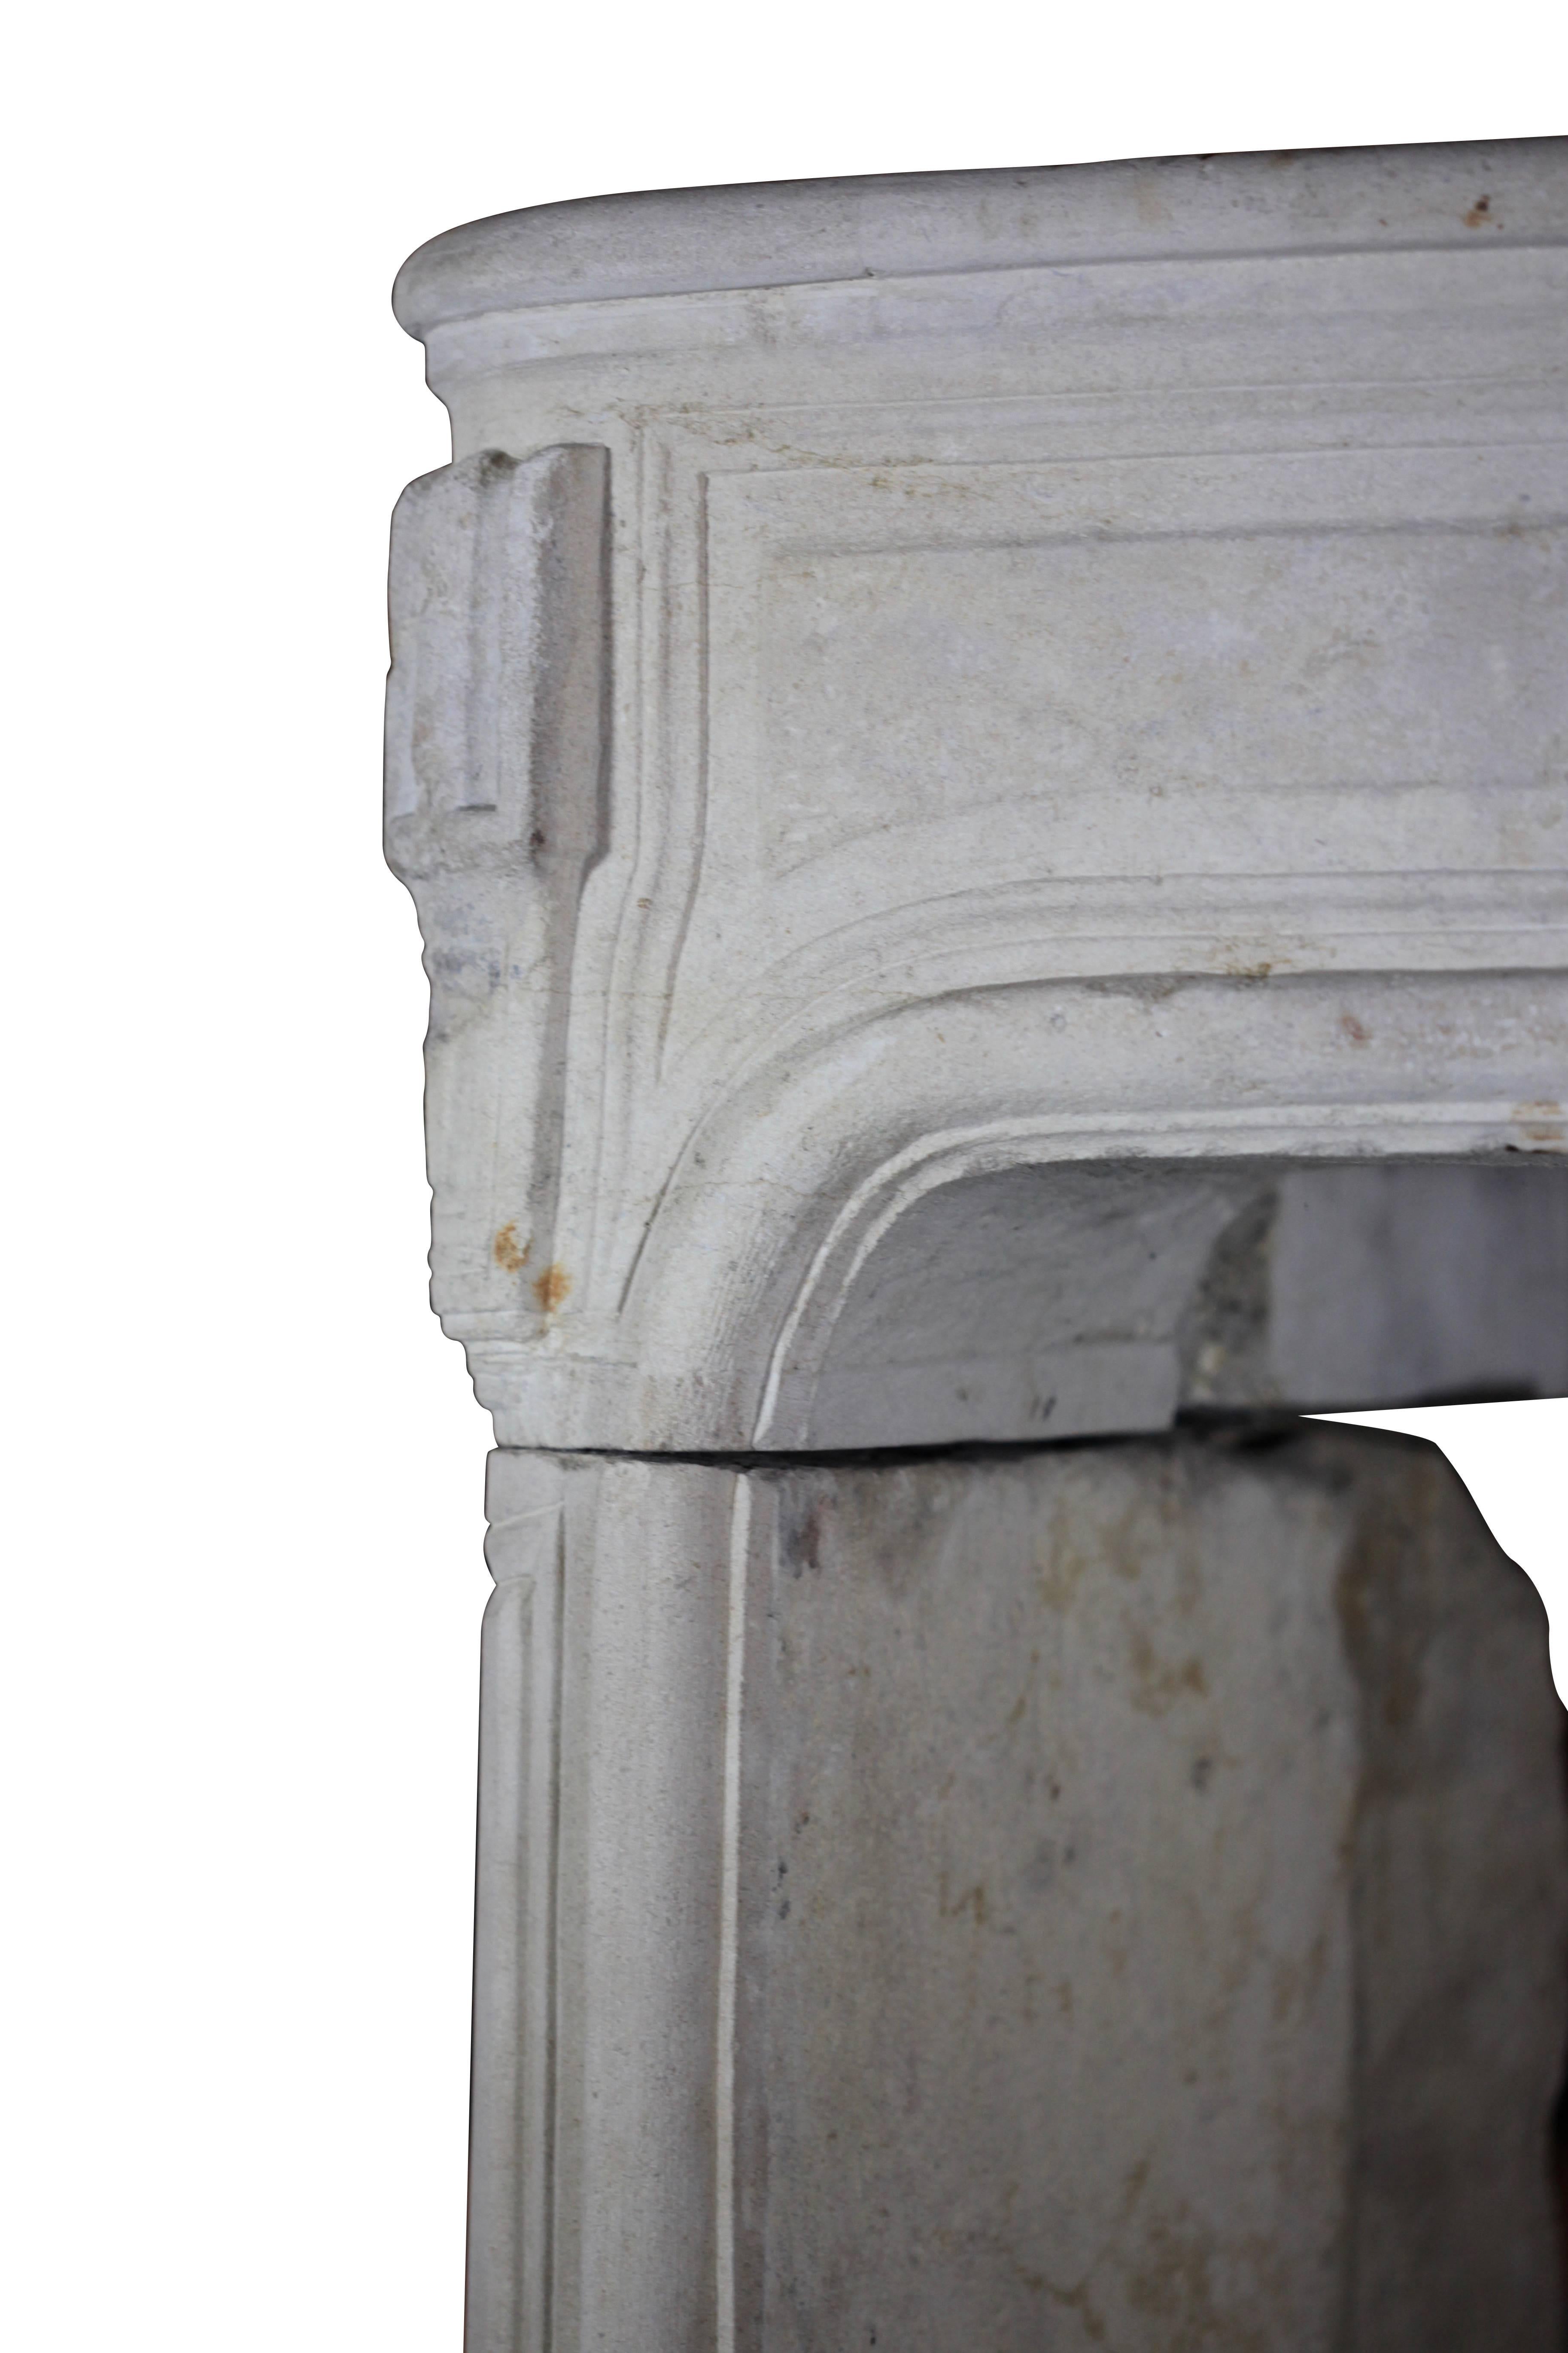 Bel encadrement de cheminée d'origine française en pierre calcaire du début de la période Régence. Les jambages présentent des détails d'époque Louis XIV. Parfait pour créer une chambre de campagne européenne.
Mesures :
166 cm EW 65.35